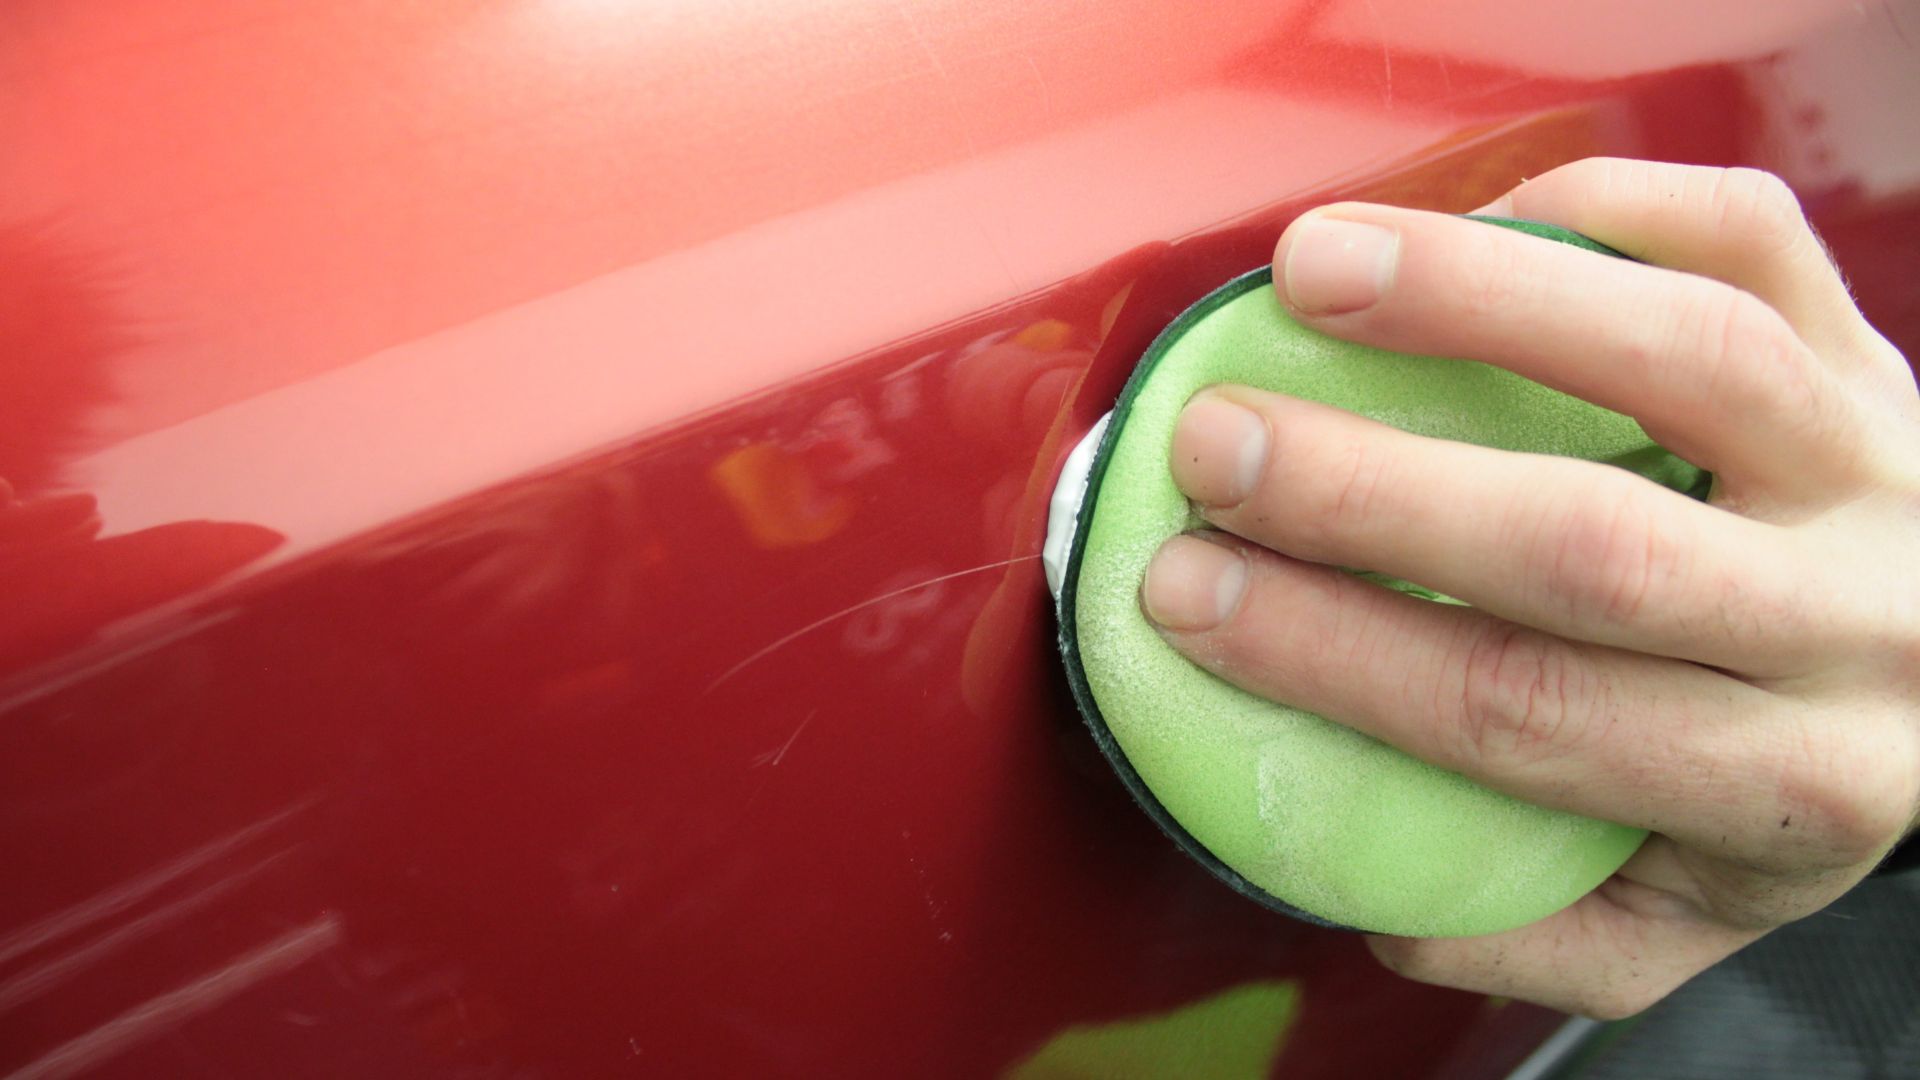 Comment effacer les rayures de votre voiture ? - Blog gs27